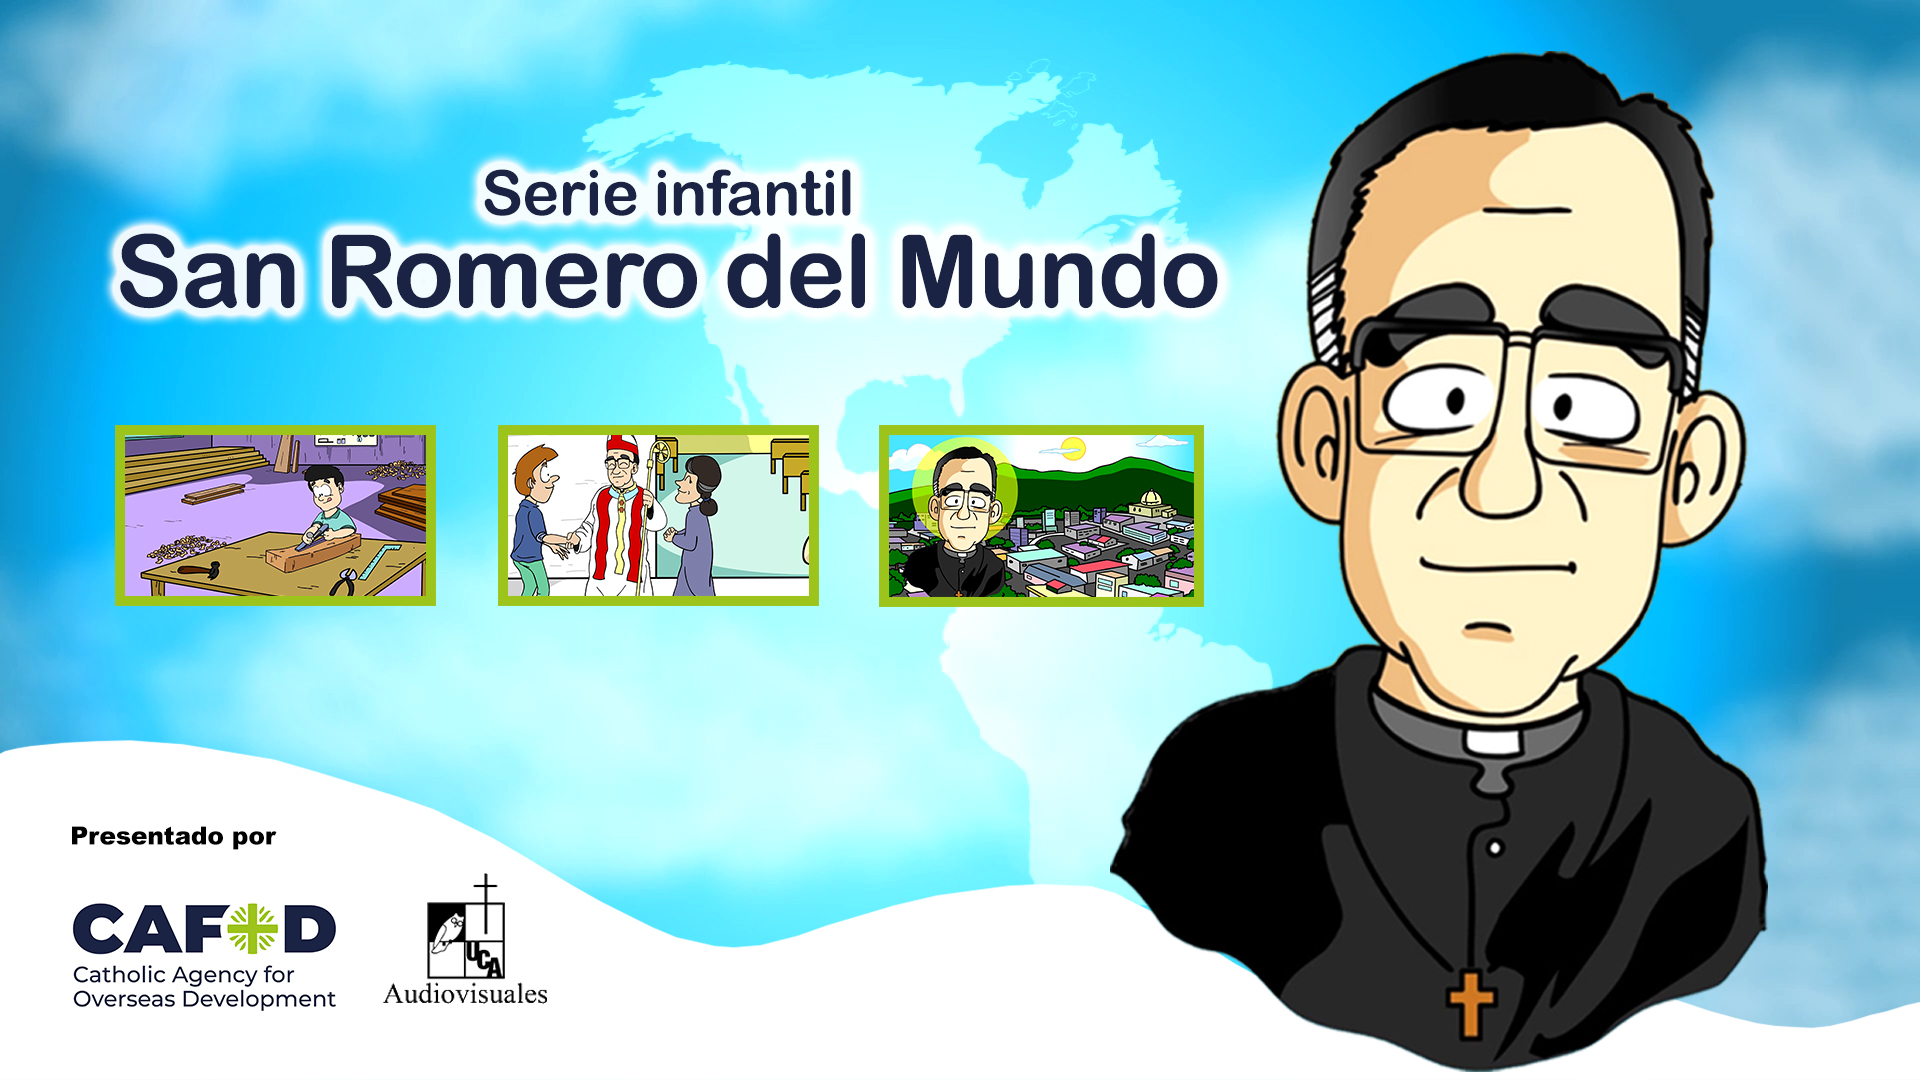 San Romero del Mundo